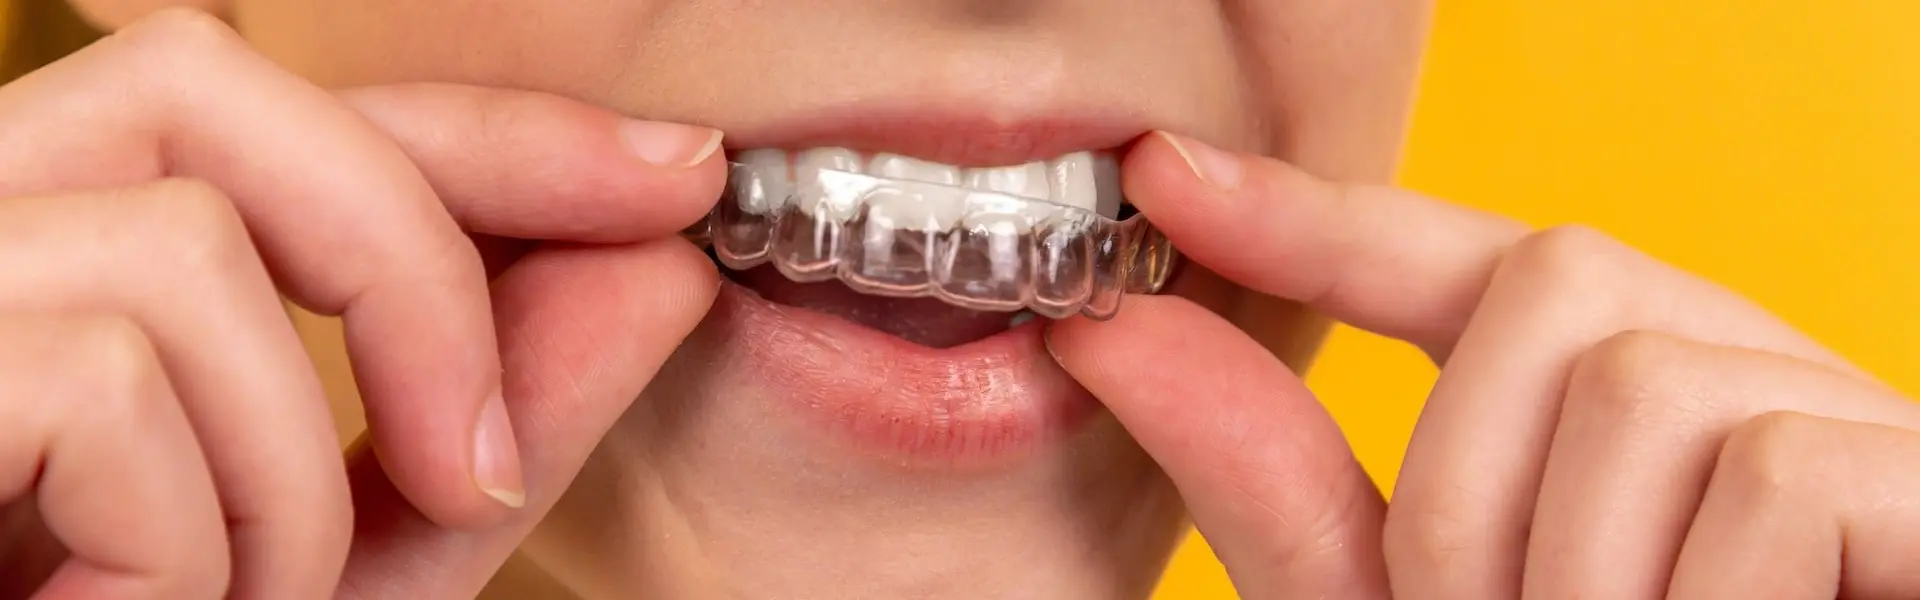 Как избавиться от рвотного рефлекса при лечении зубов?